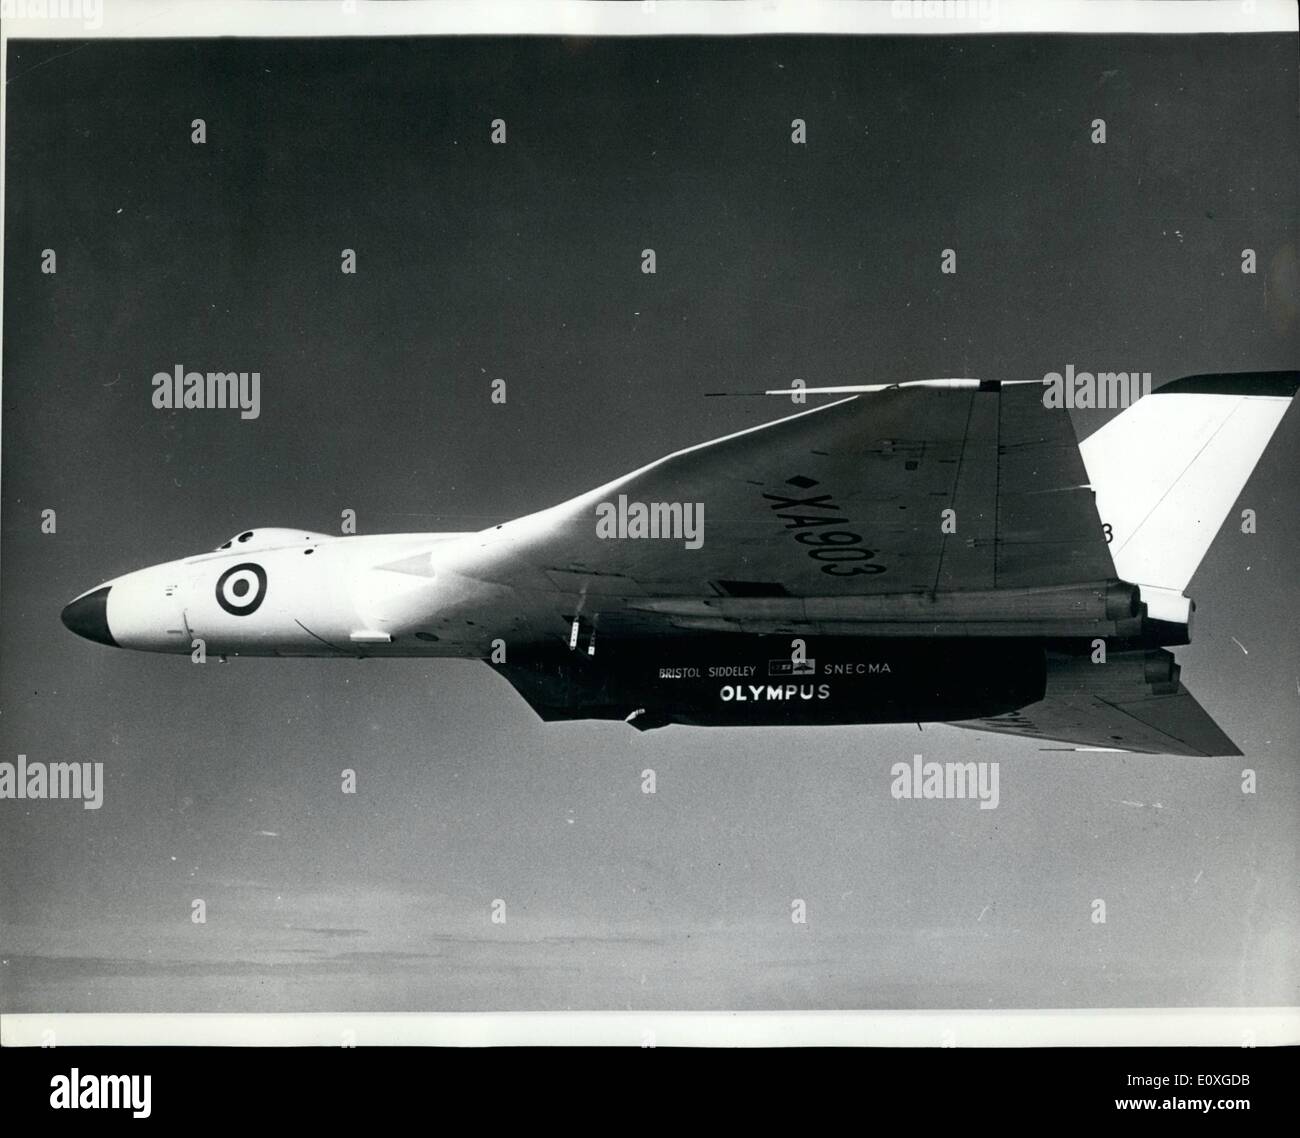 Sept. 23, 1966 - 23.09.66 Olympus 593 fliegenden Prüfstand im Flug. Foto zeigt: Ein Luft-Luft-Bild von der Vulcan-Bomber die Bristol Siddeley Erkundung den Concorde subsonic Flugbereich geändert worden ist. Ein Bristol Siddeley/SNECMA Olympus 593 Turbo-Jet, der Concord Power Unit wurde in den Bombenschacht der Vulcan B MK 1 Flugzeuge ausgestattet. Stockfoto